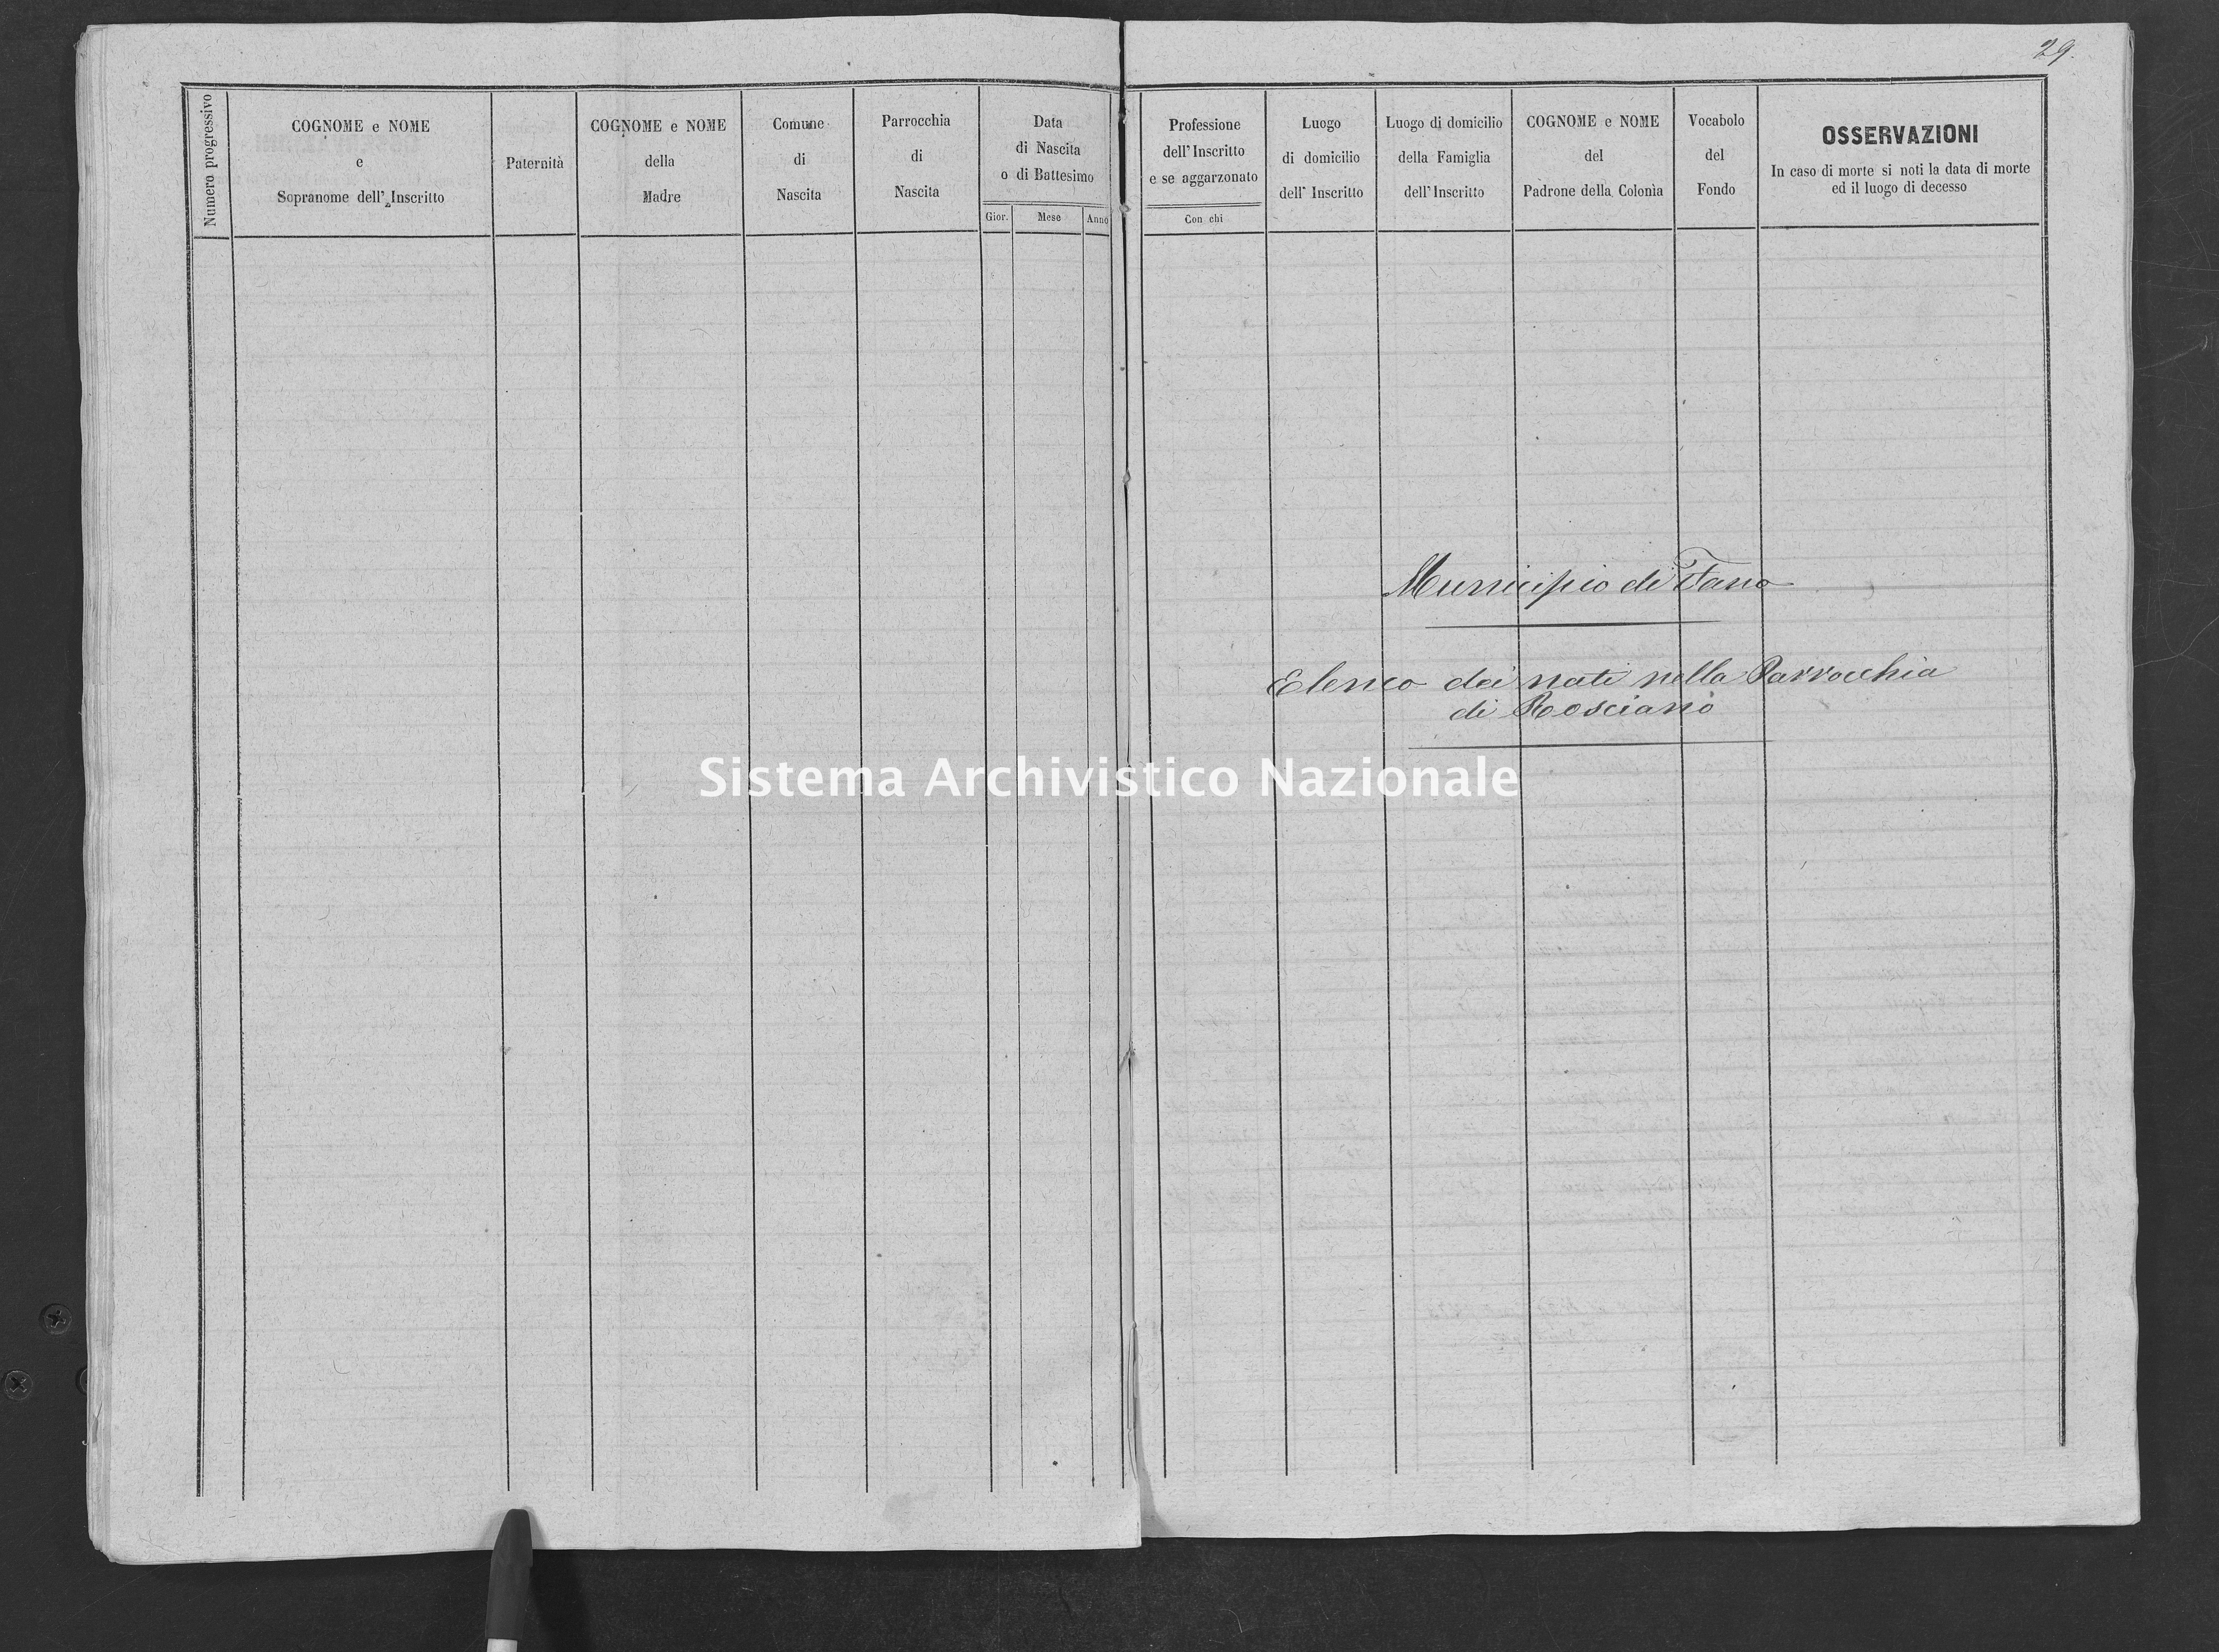 Archivio di stato di Fano - Stato civile della restaurazione - Rosciano - Nati, battesimi (maschi) - 1854 - 108 -